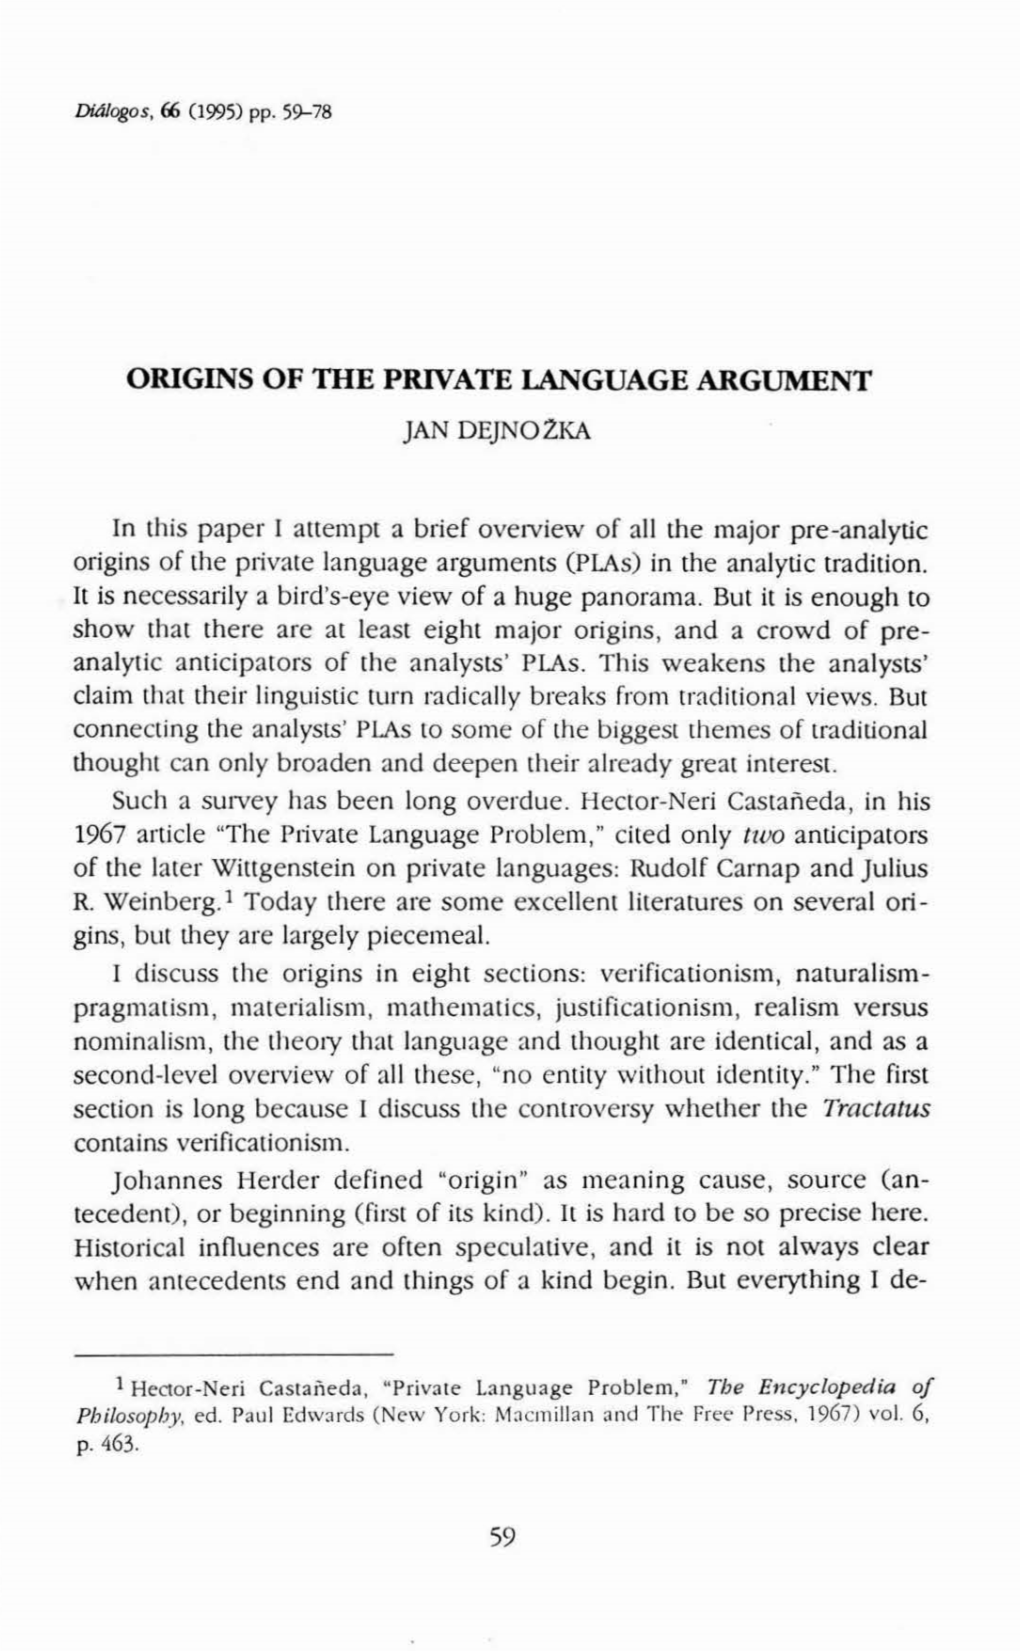 ORIGINS of the PRIVATE Language ARGUMENT 59